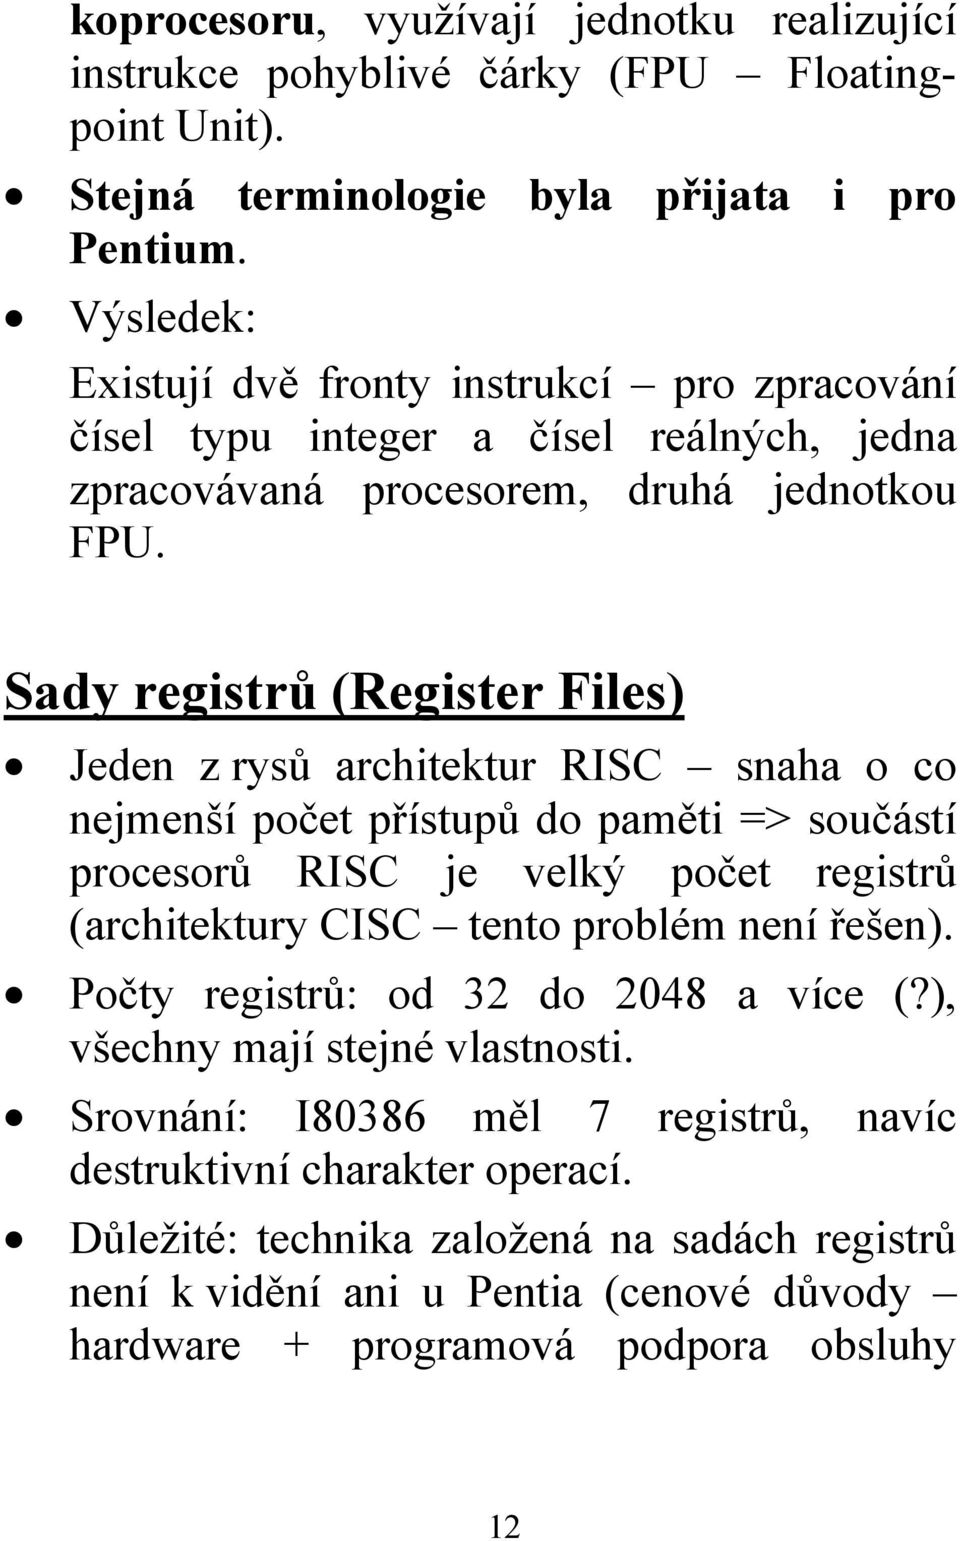 Sady registrů (Register Files) Jeden z rysů architektur RISC snaha o co nejmenší počet přístupů do paměti => součástí procesorů RISC je velký počet registrů (architektury CISC tento problém